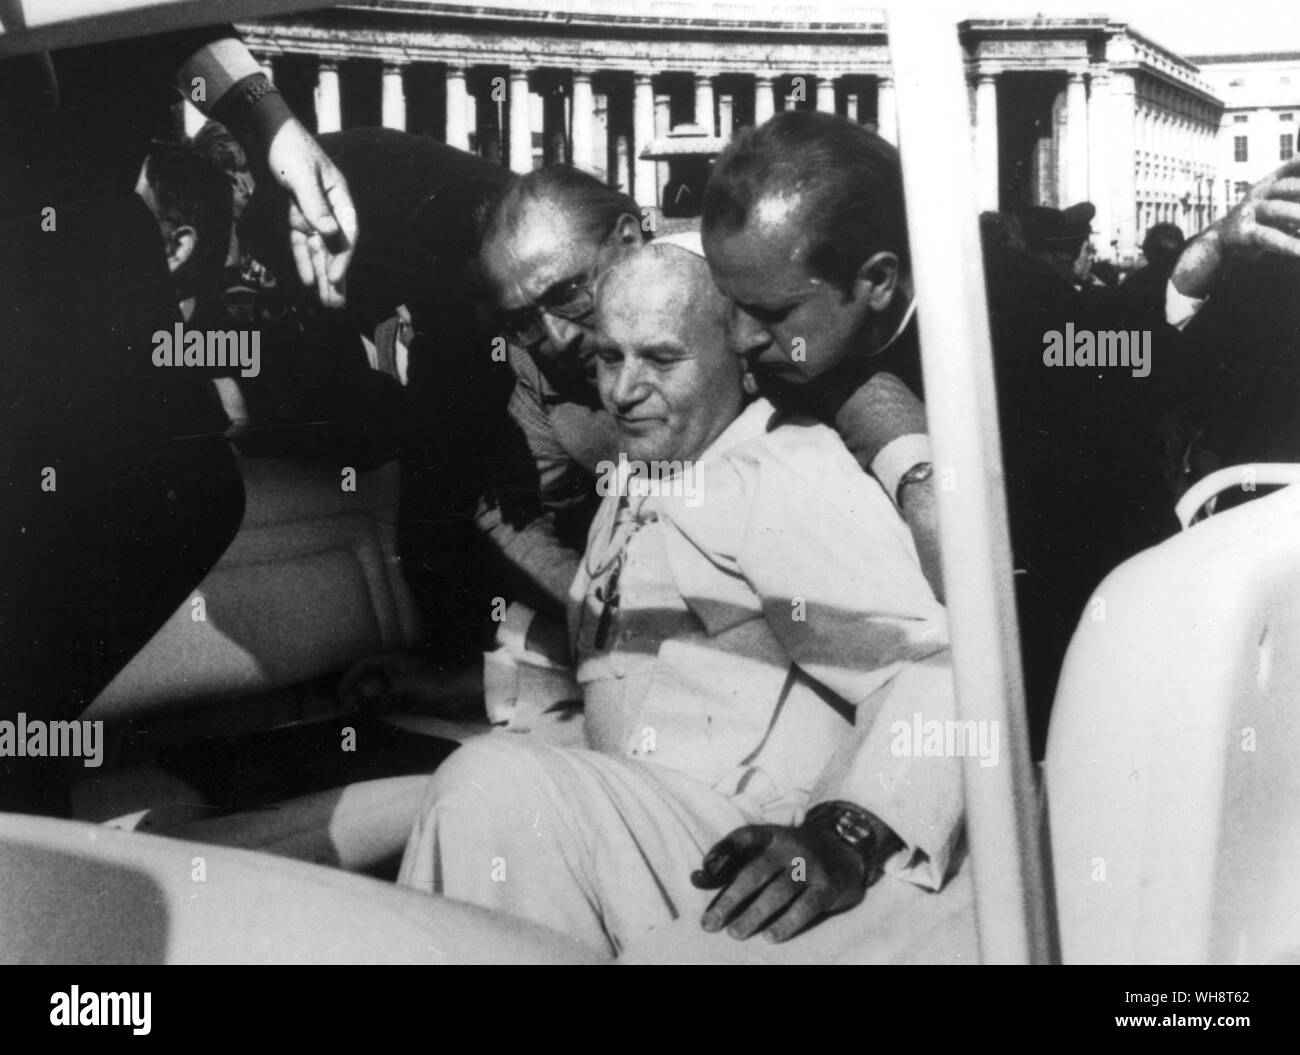 Le Pape Jean Paul II est aidé par sa secrétaire Ladislaw Dsziwisz (à droite) et d'autres assistants peu après qu'il a été blessé par des étudiants turcs dans ai St Peters Square peu après la tentative de prise de vue sur sa vie Mai 1981 Banque D'Images